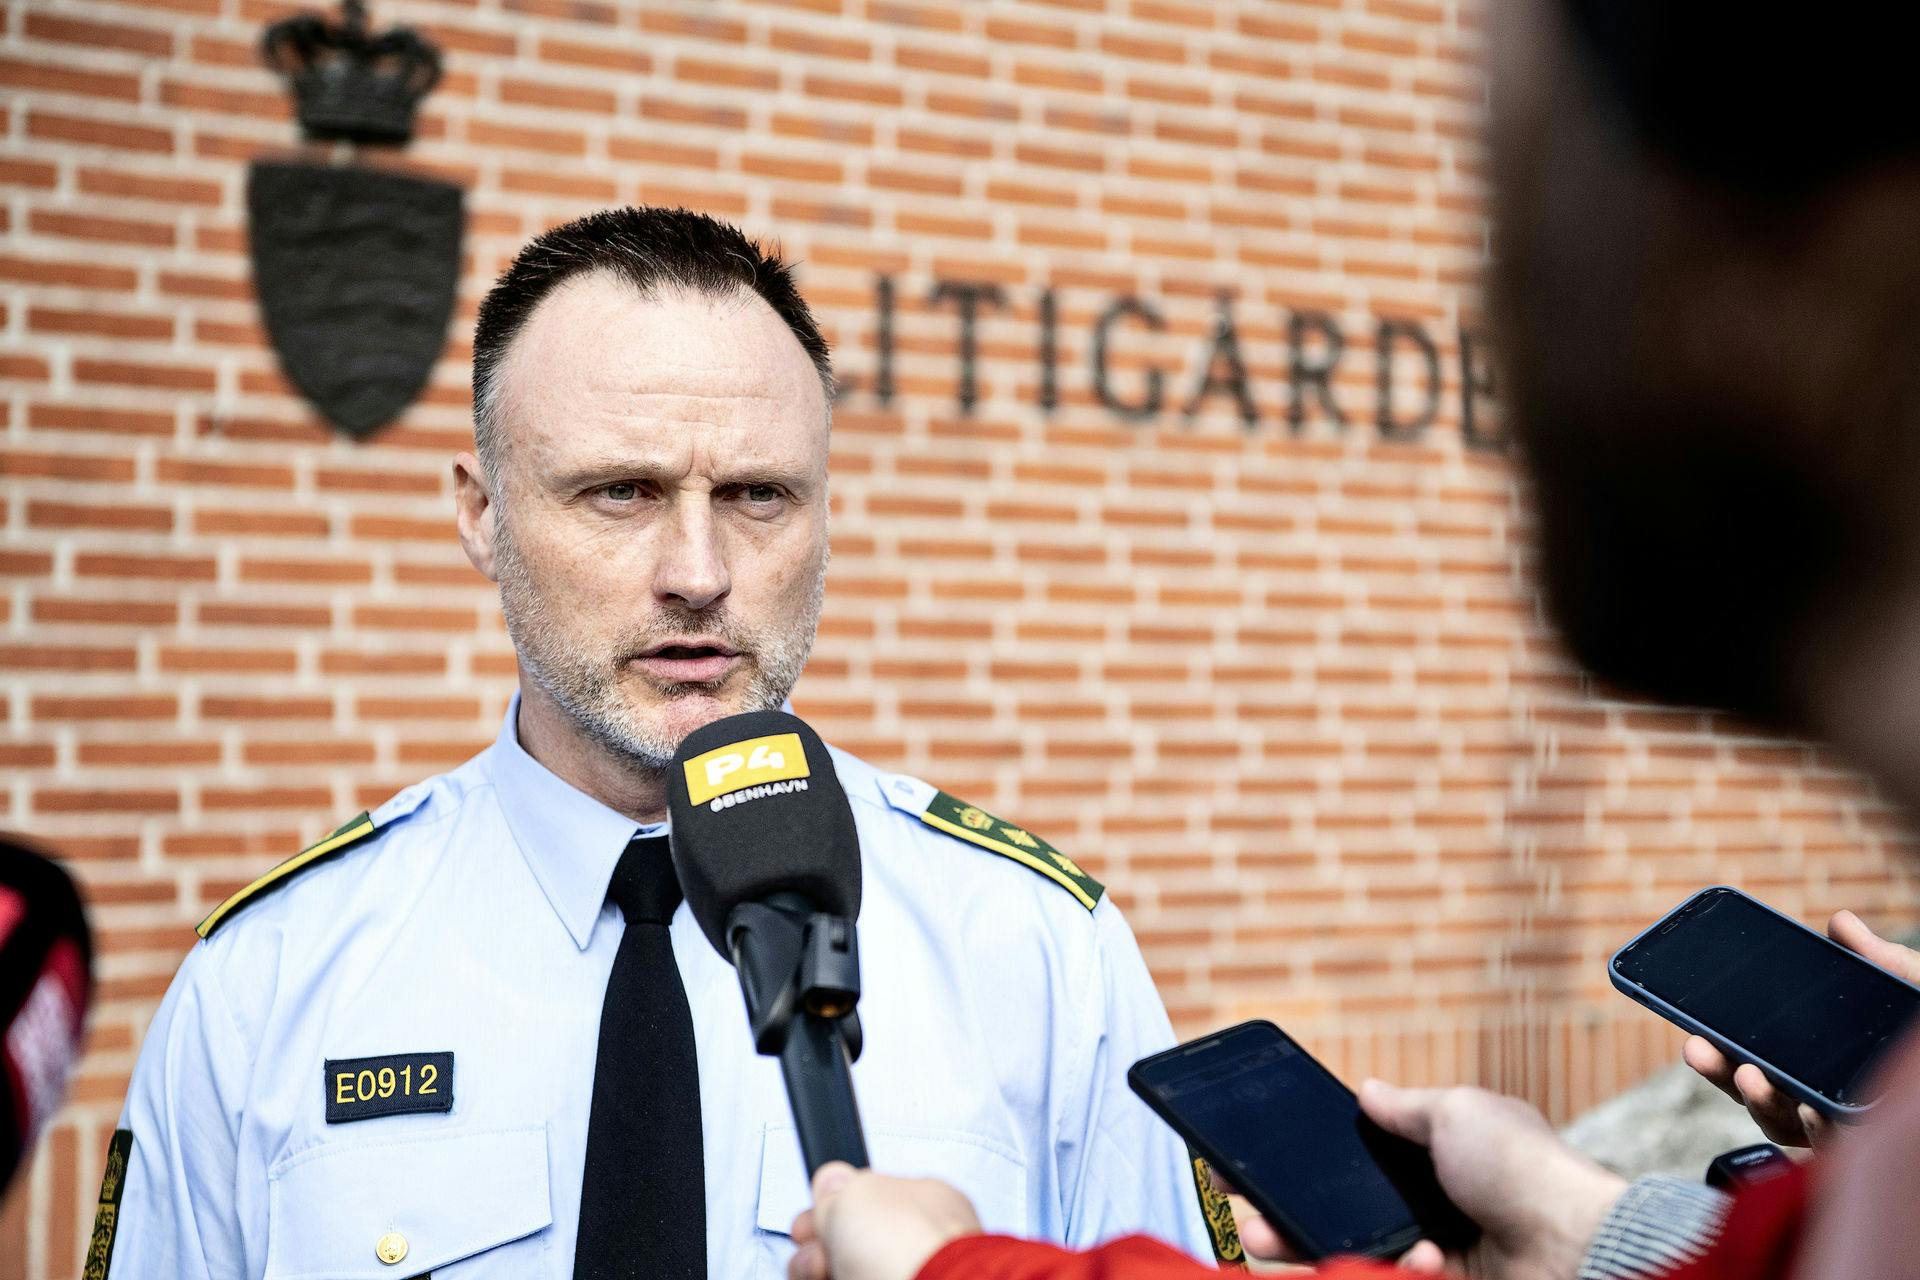 Vicepolitiinspektør Peter Malmose under pressemødet på politigården i Albertslund, fredag den 6. maj 2022, hvor han fortalt, at man nu havde sigtet en mand for drabet på Louise Borglit.&nbsp;

&nbsp;
